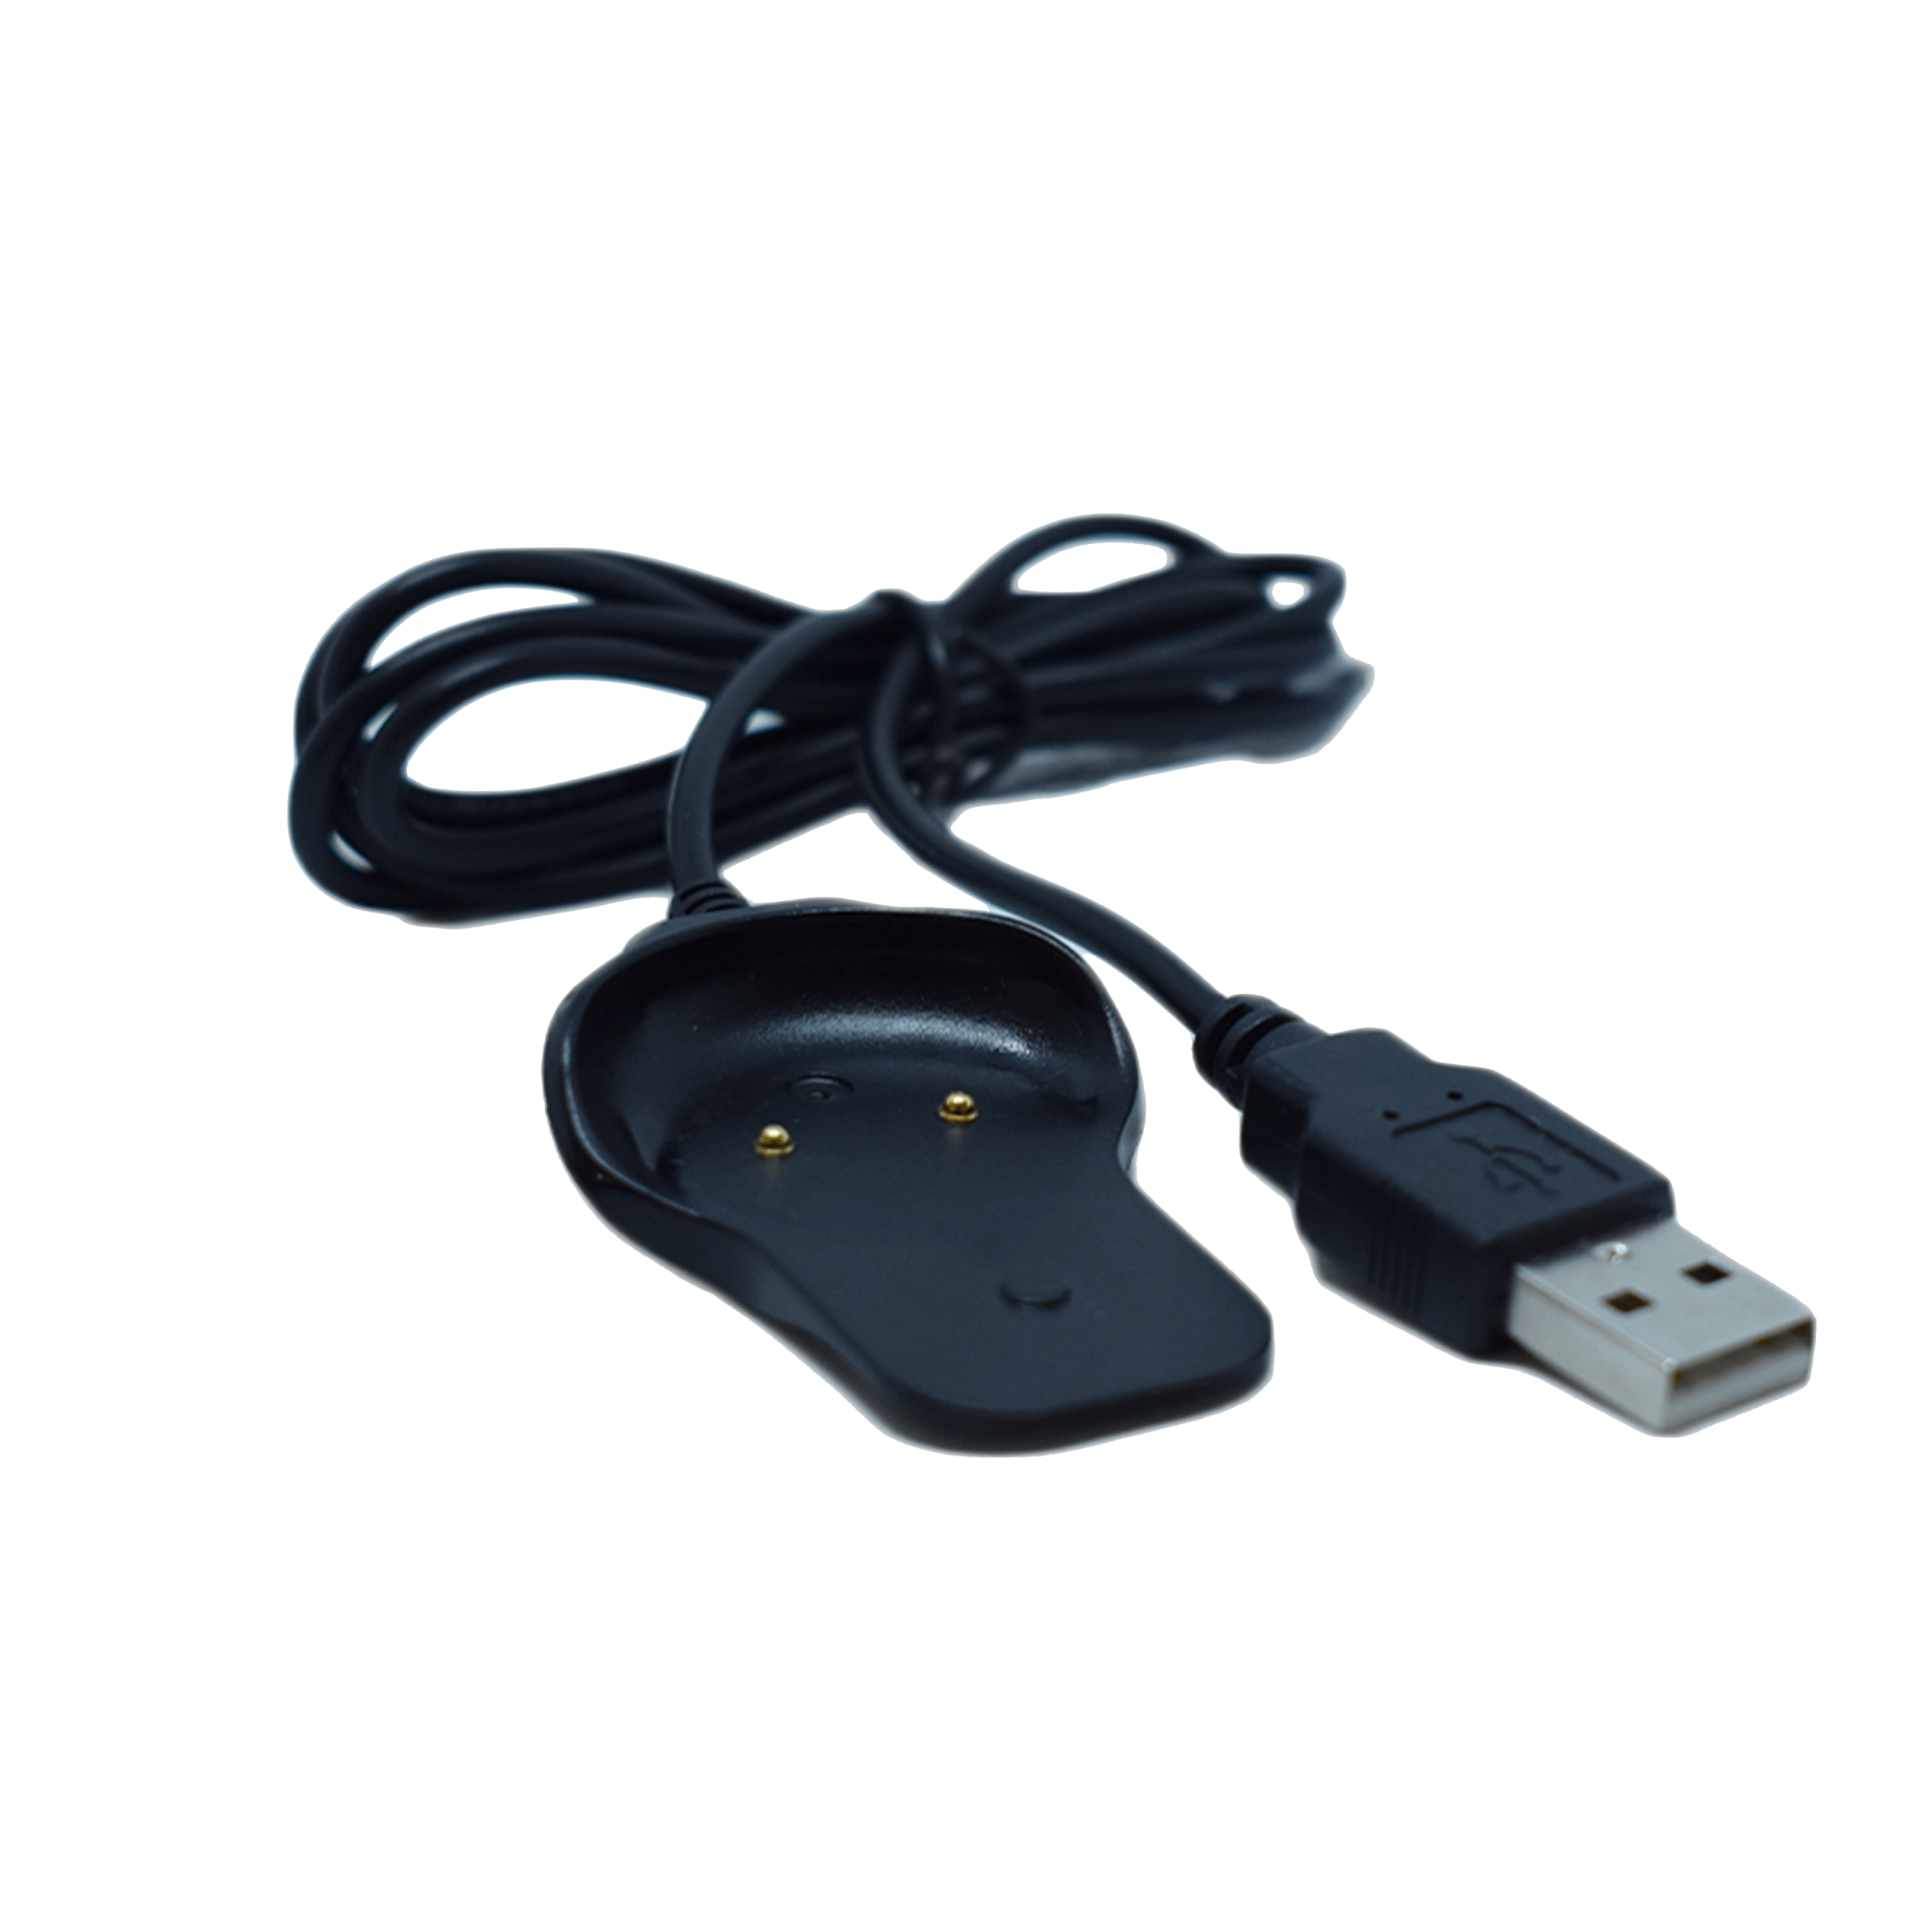 Produktbild ohne Hintergrund Ersatz USB Ladekabel für PAJ EASY Finder